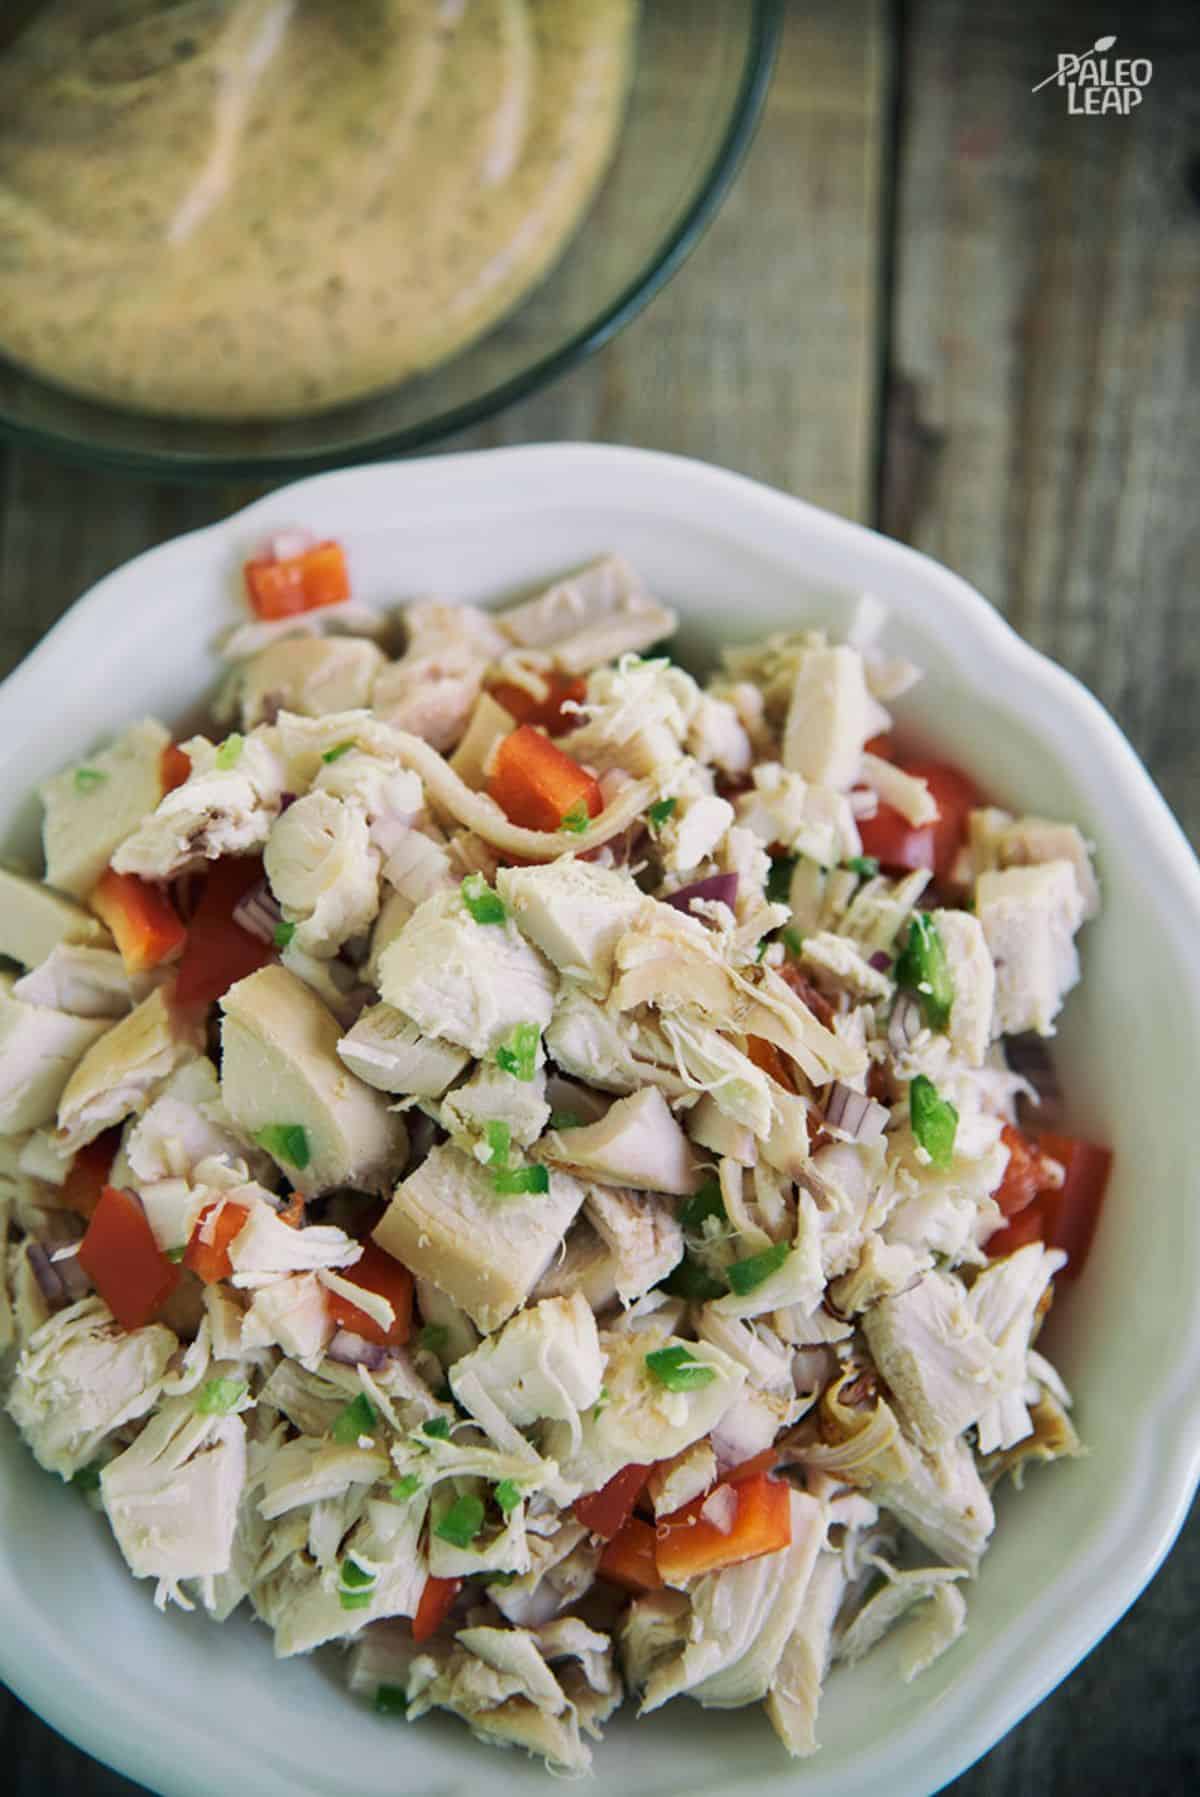 Spicy Mexican-Style Chicken Salad Recipe Preparation